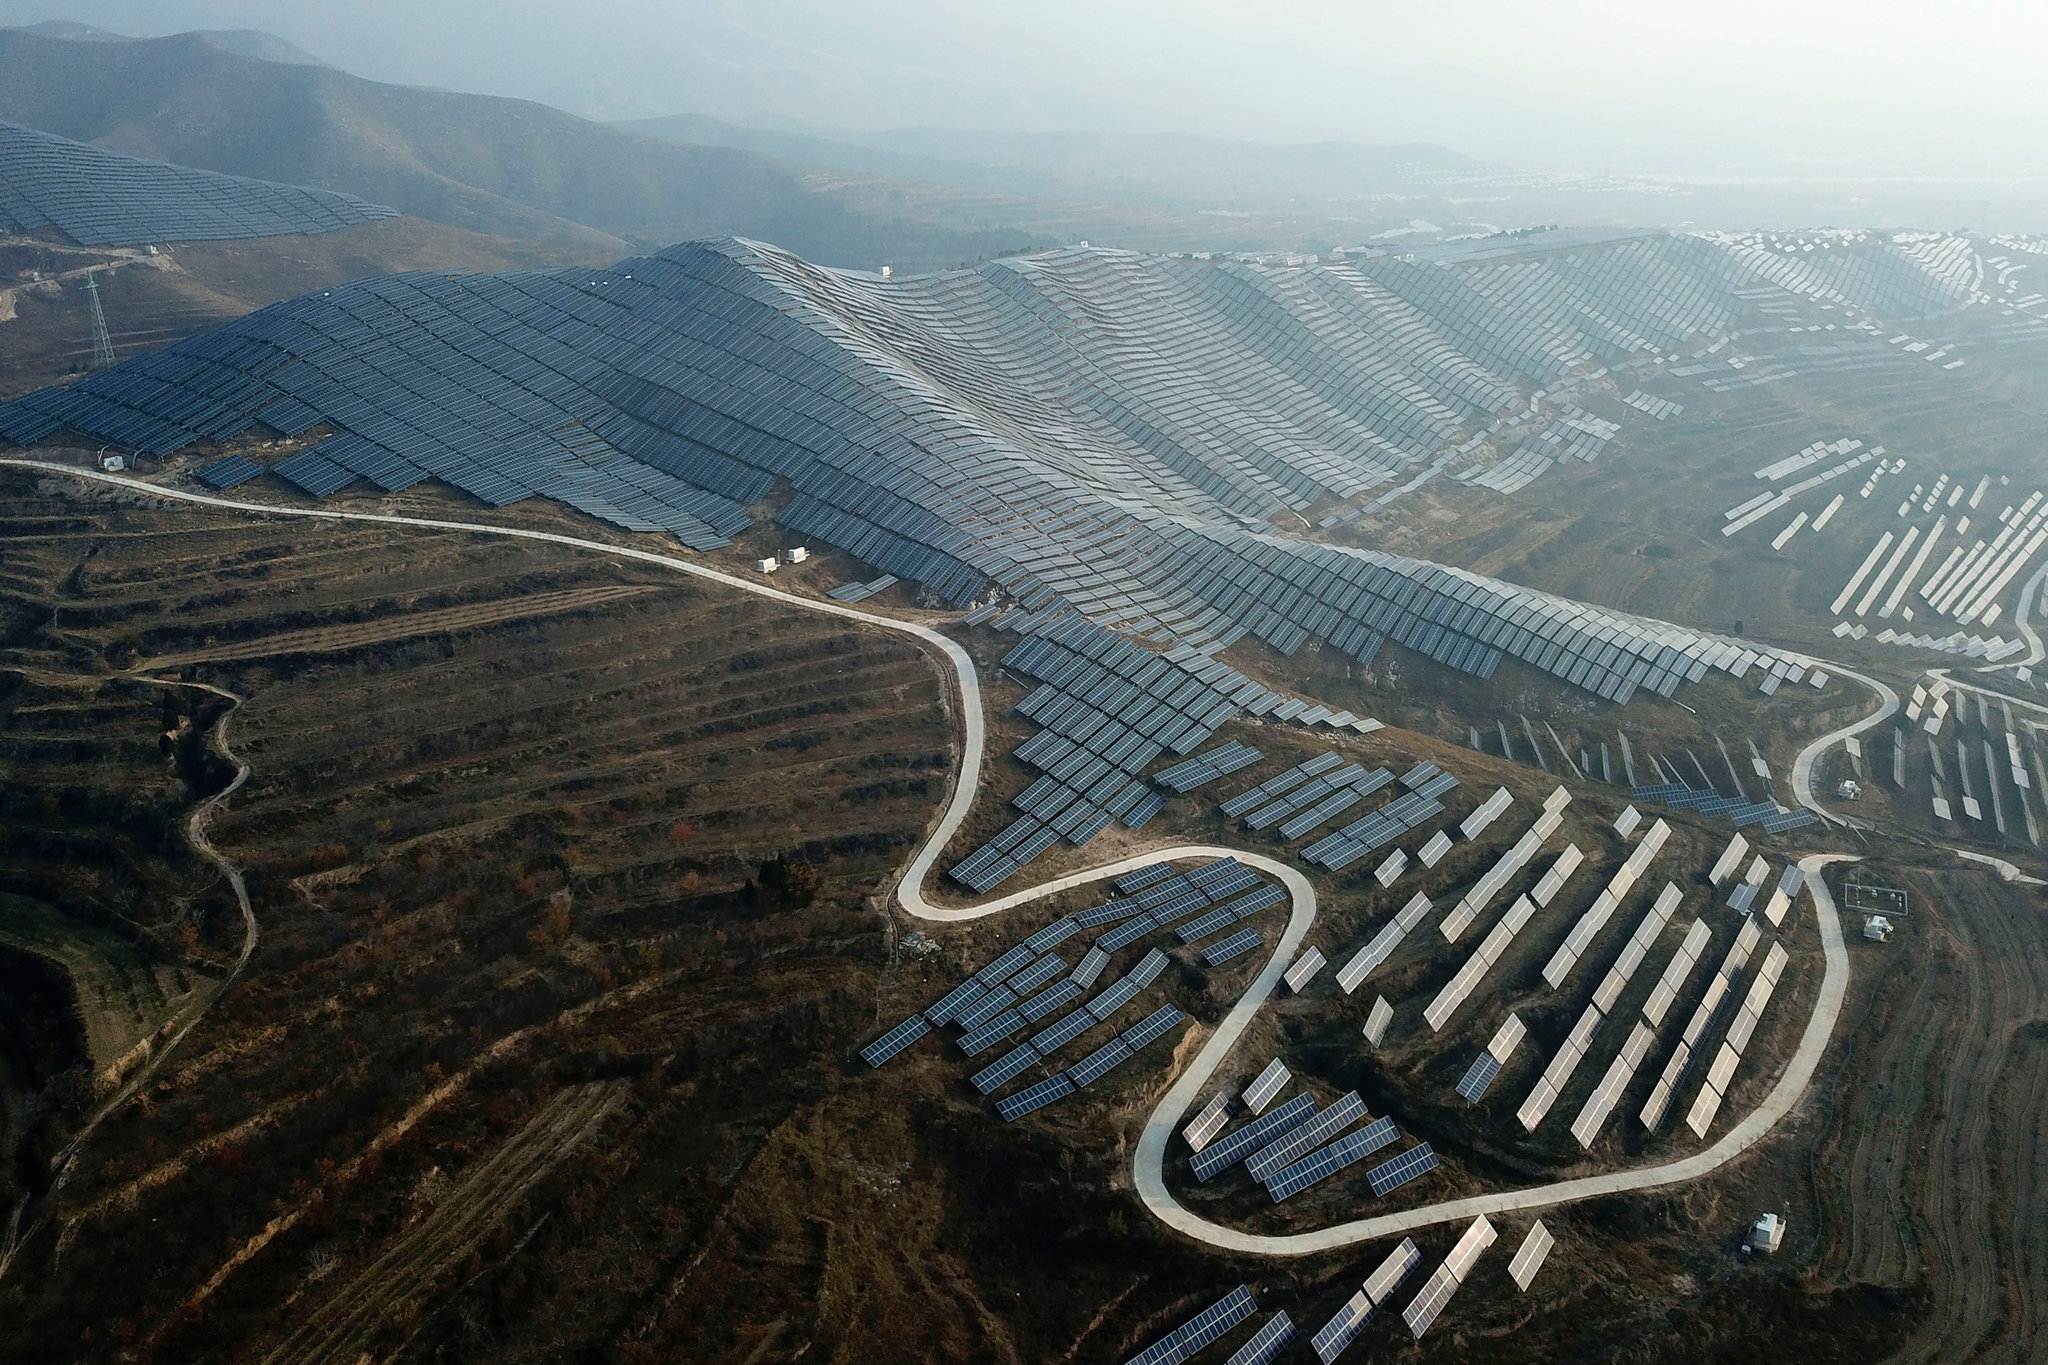 جانب من تركيب الألواح الشمسية بمقاطعة شانشي الصينية بأحد مشروعات الطاقة المتجددة في الصين